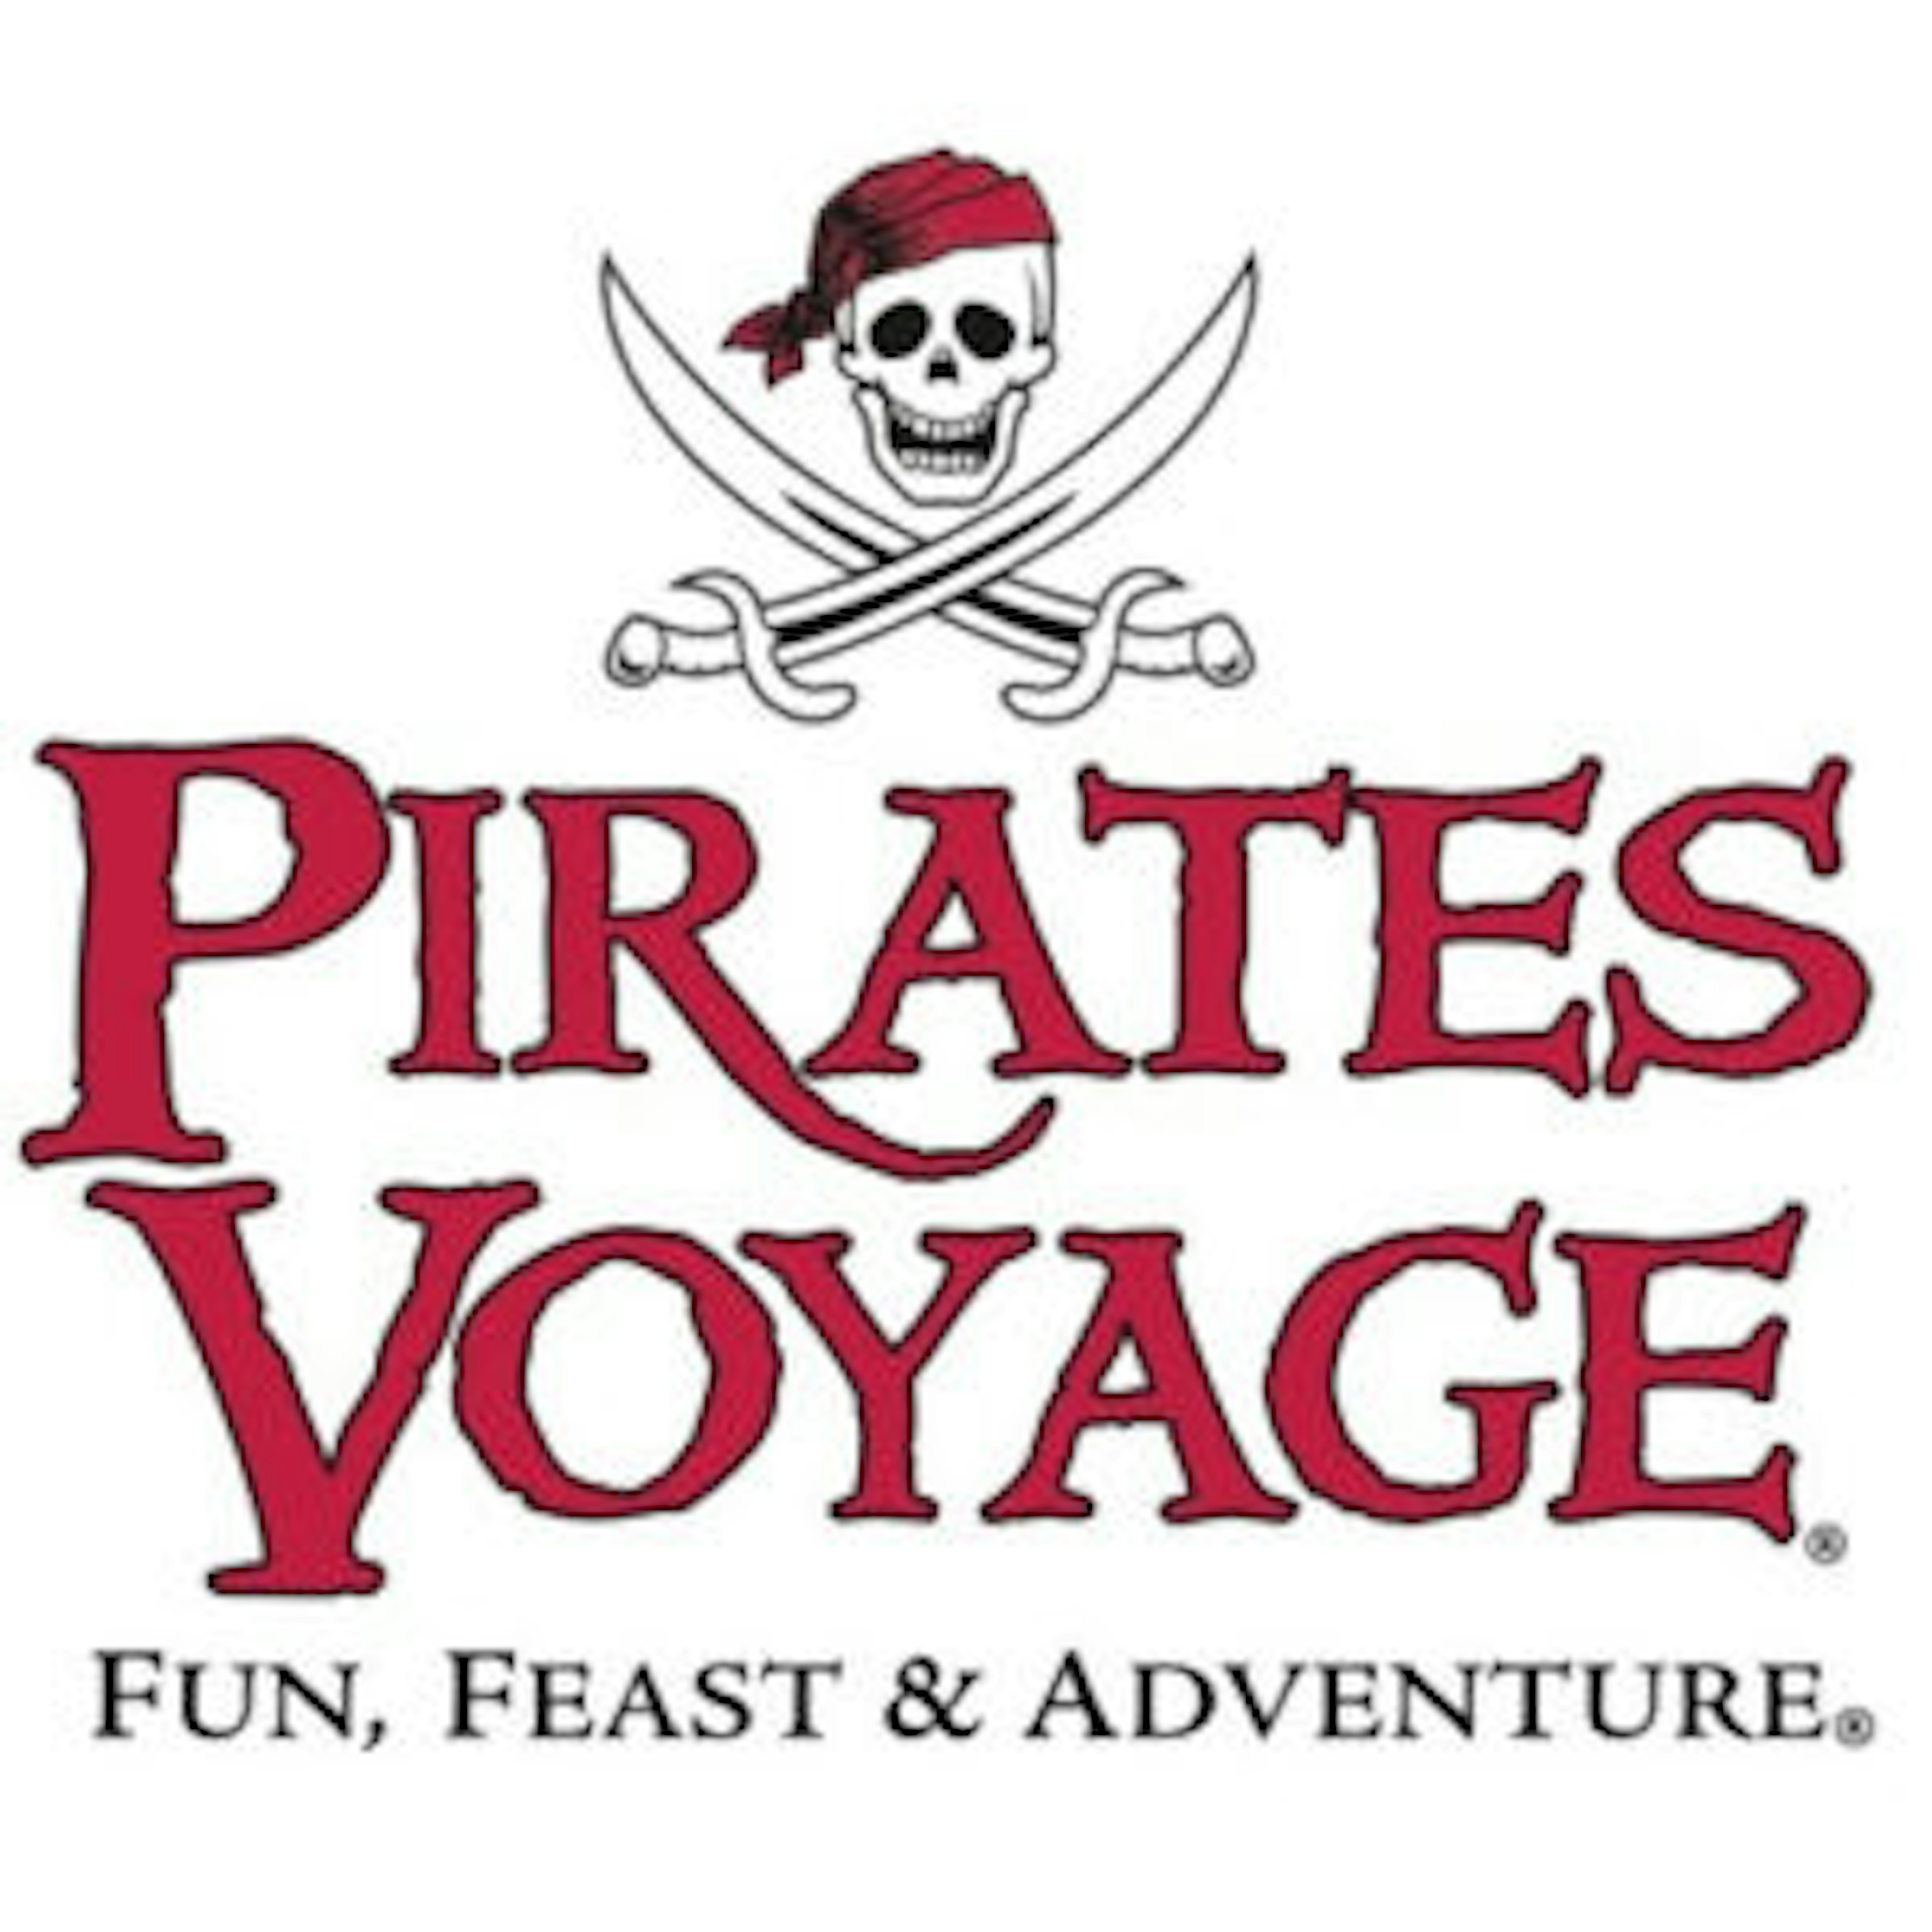 Pirates Voyage Dinner & Show